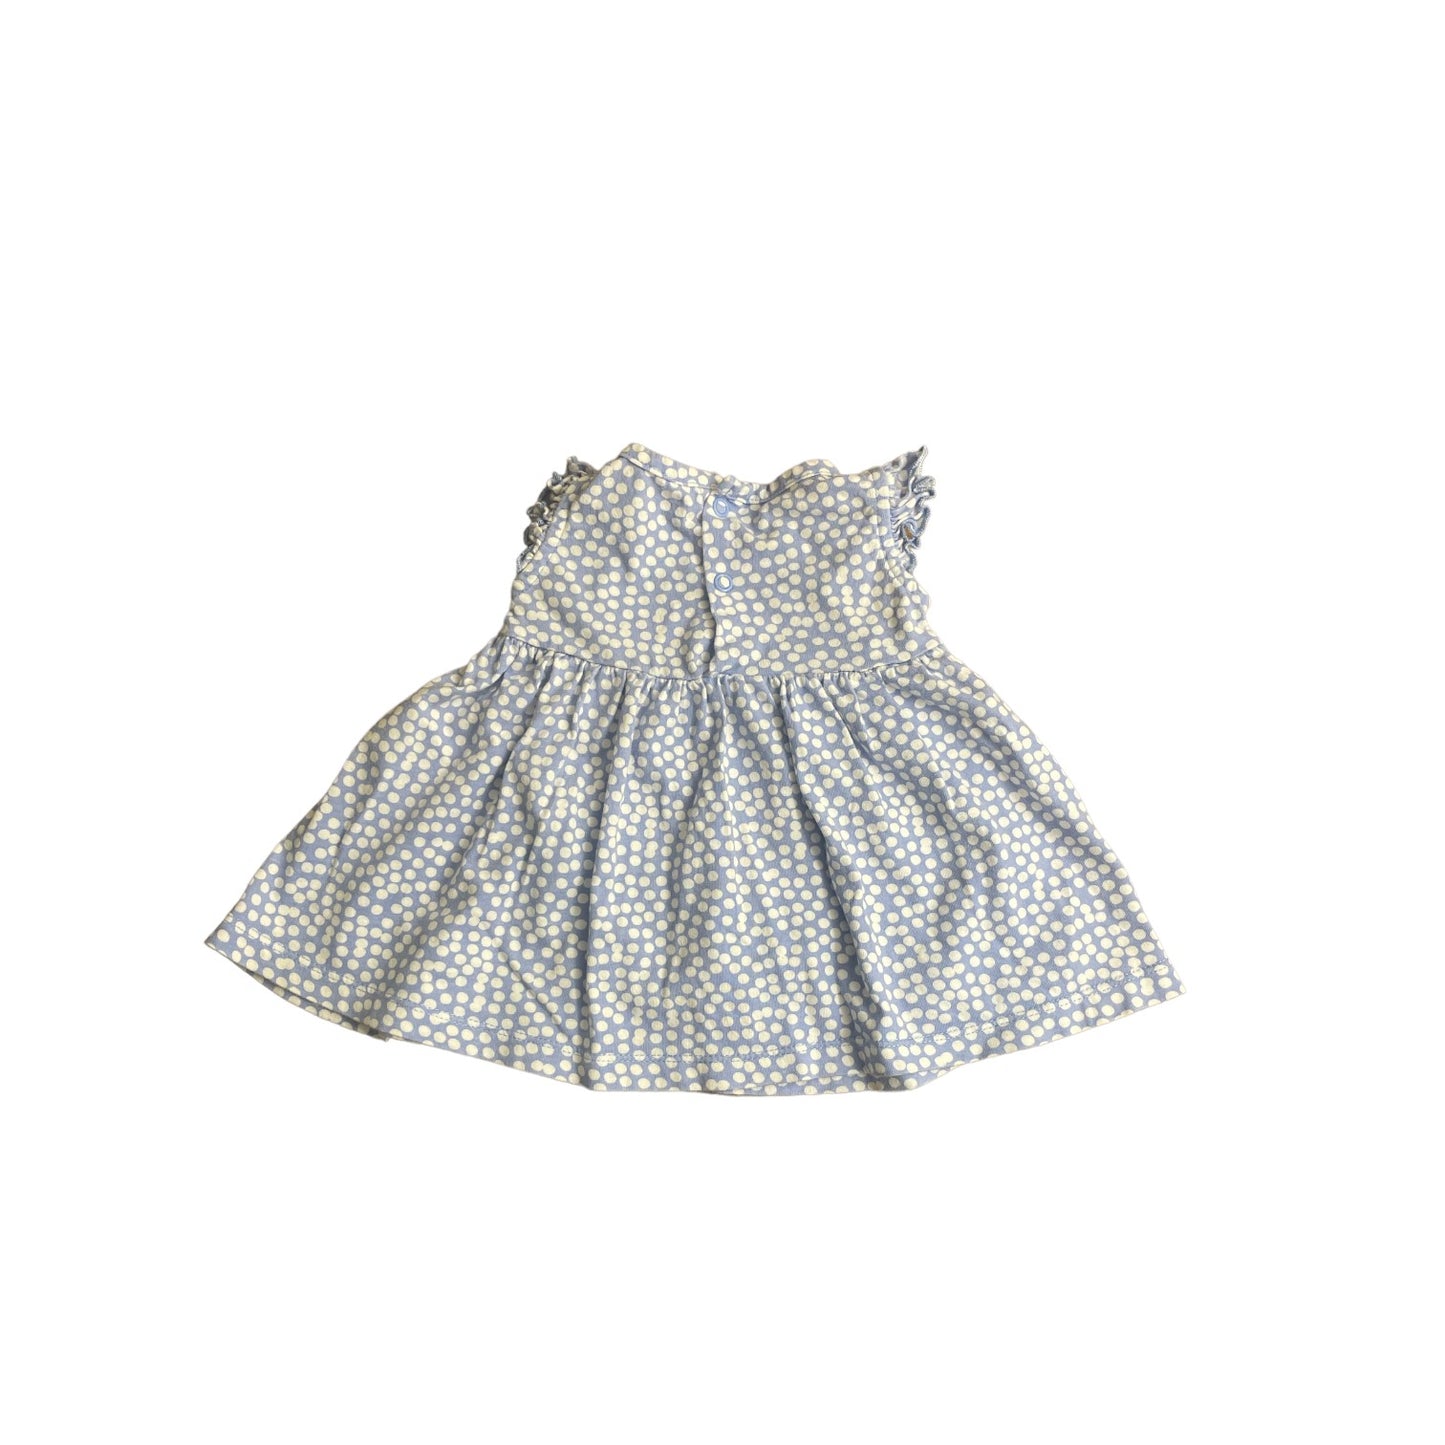 Carter's Infant Girls Dress 0-3 months